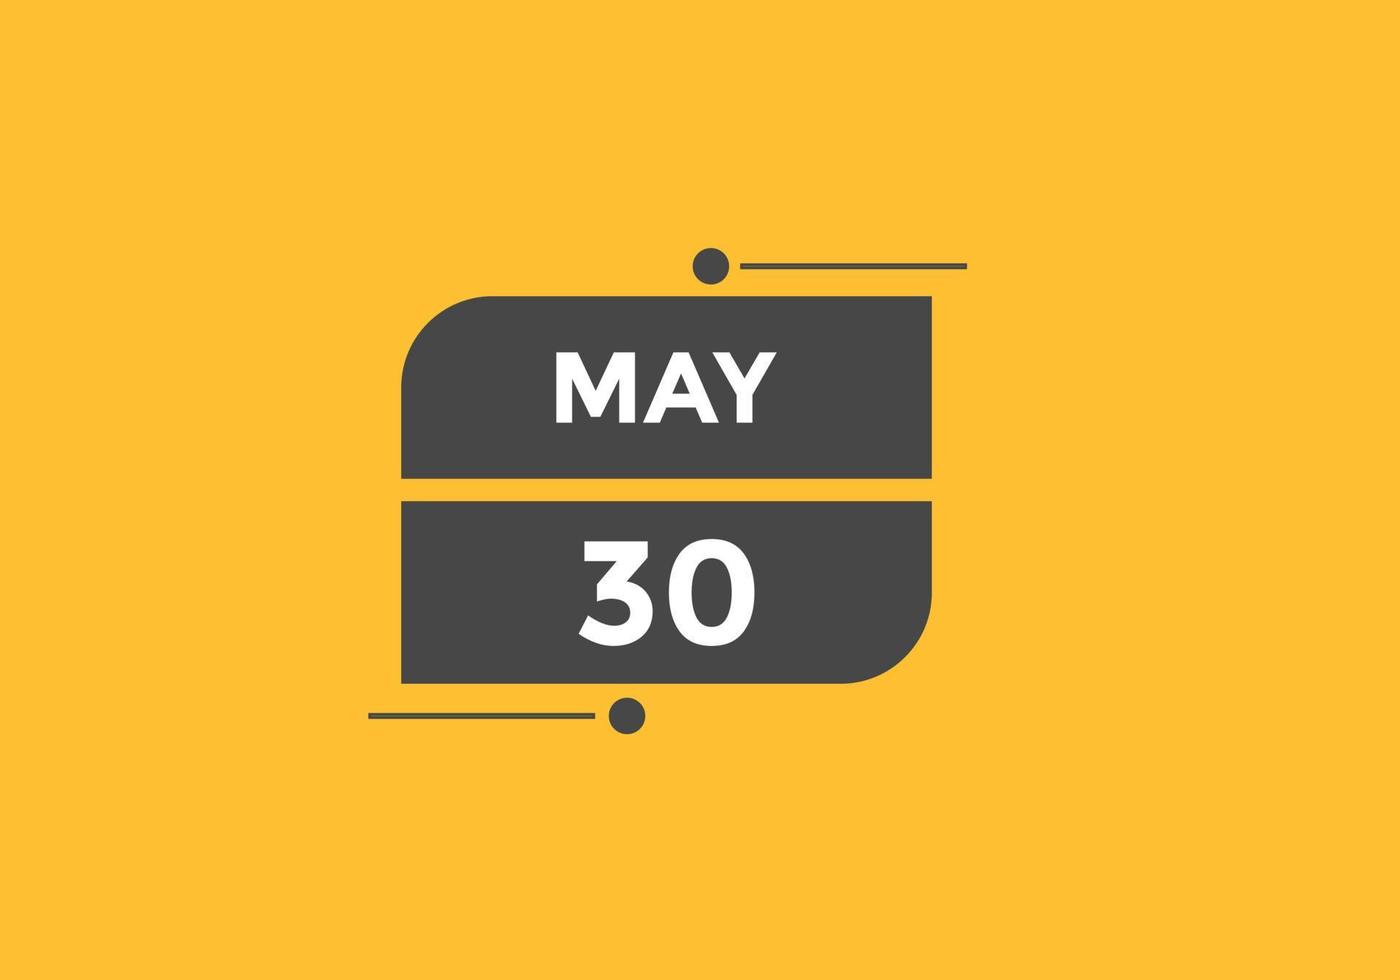 may 30 calendar reminder. 30th may daily calendar icon template. Calendar 30th may icon Design template. Vector illustration